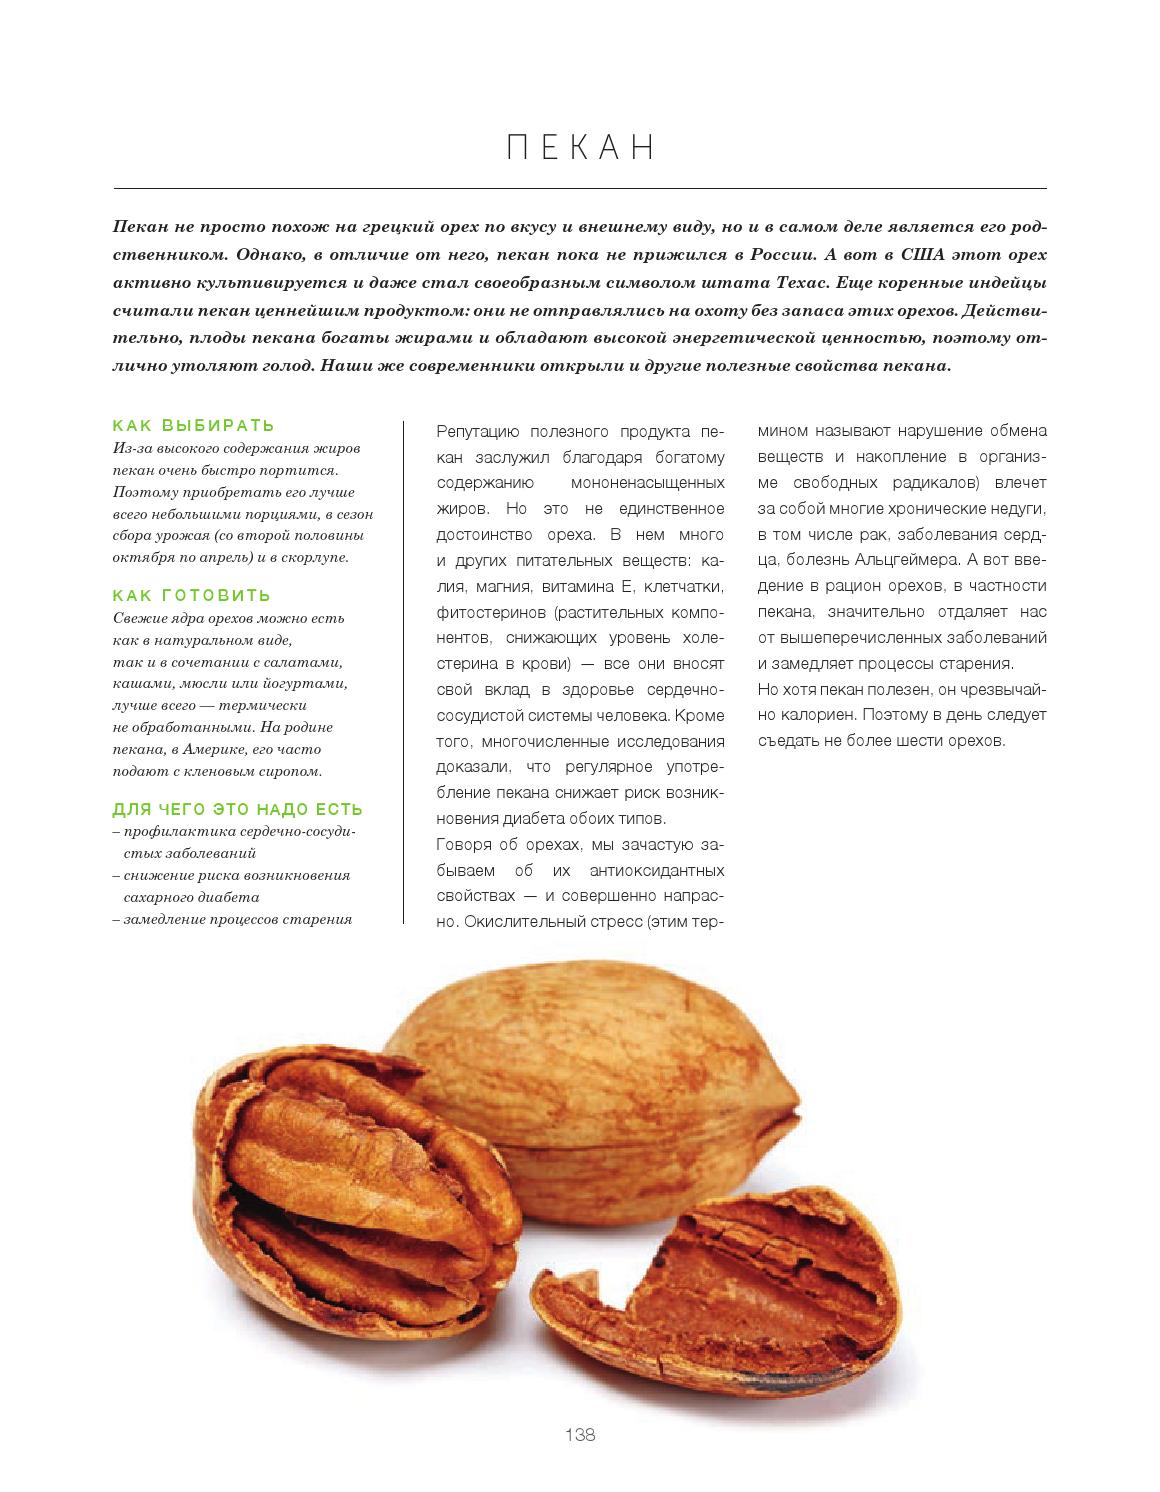 Кедровые орехи: польза, вред и калорийность | food and health